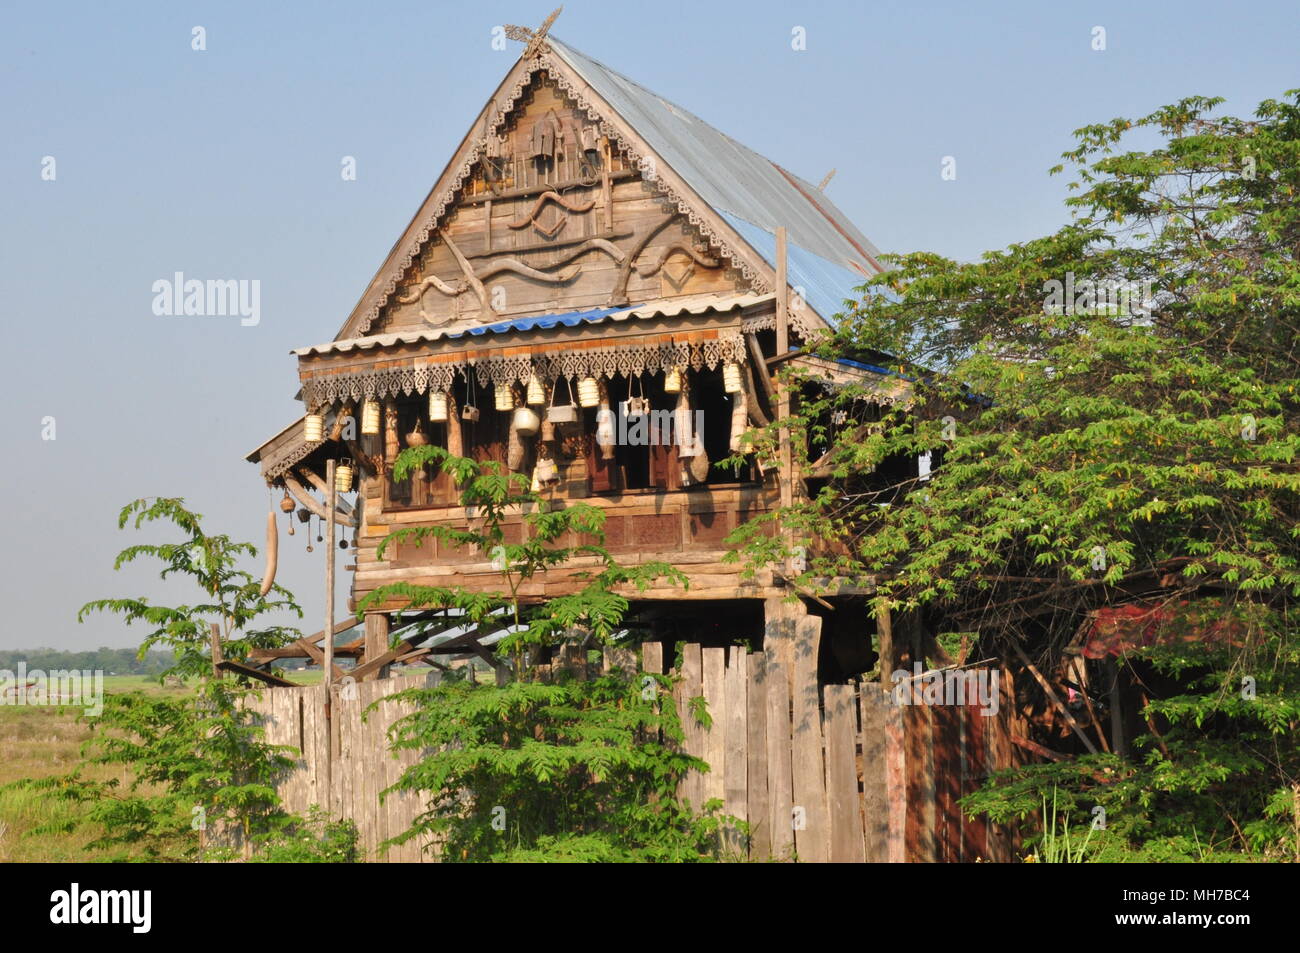 Haus eines Reisbauern, Phrae, Thailand, Woodhouse, Schnitzereien, Terrasse, Lampions, hängende Objekte, Zaun, Blech Dach, Baum Bevölkerung Stockfoto